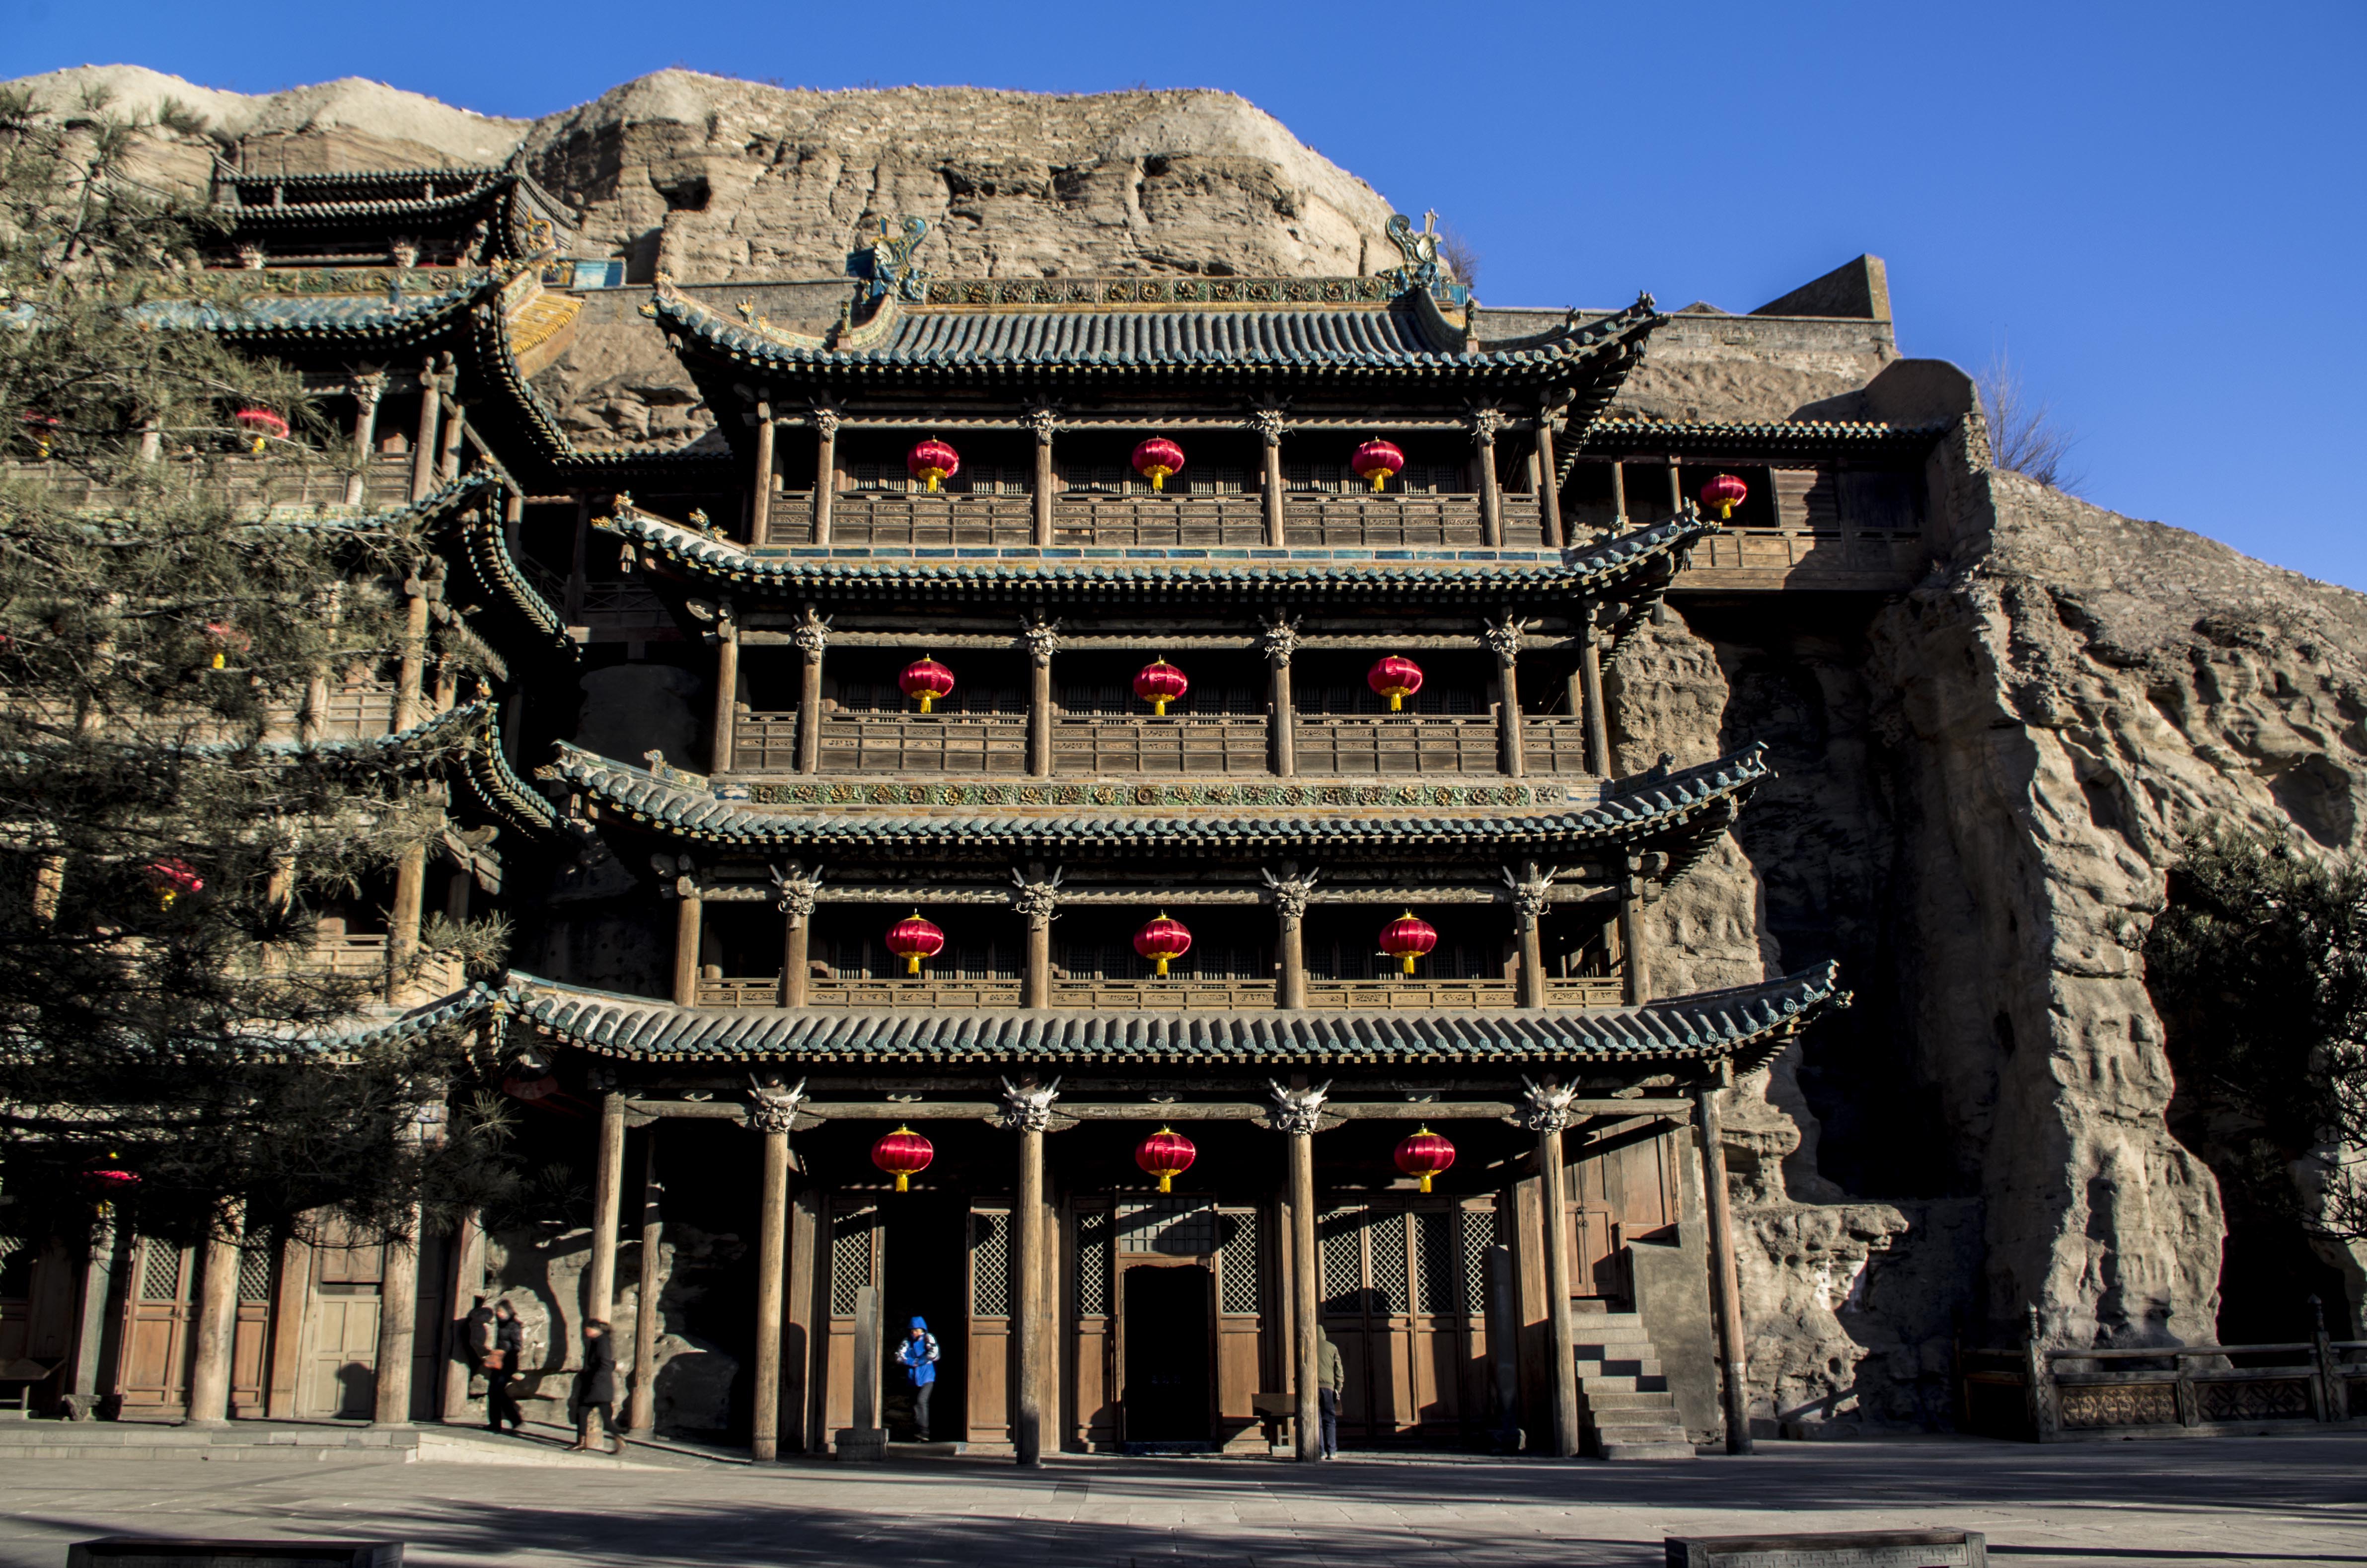 甘肃「张掖丹霞国家地质公园」是一个什么景点，有哪些推荐的旅游攻略和特色景观？ - 知乎